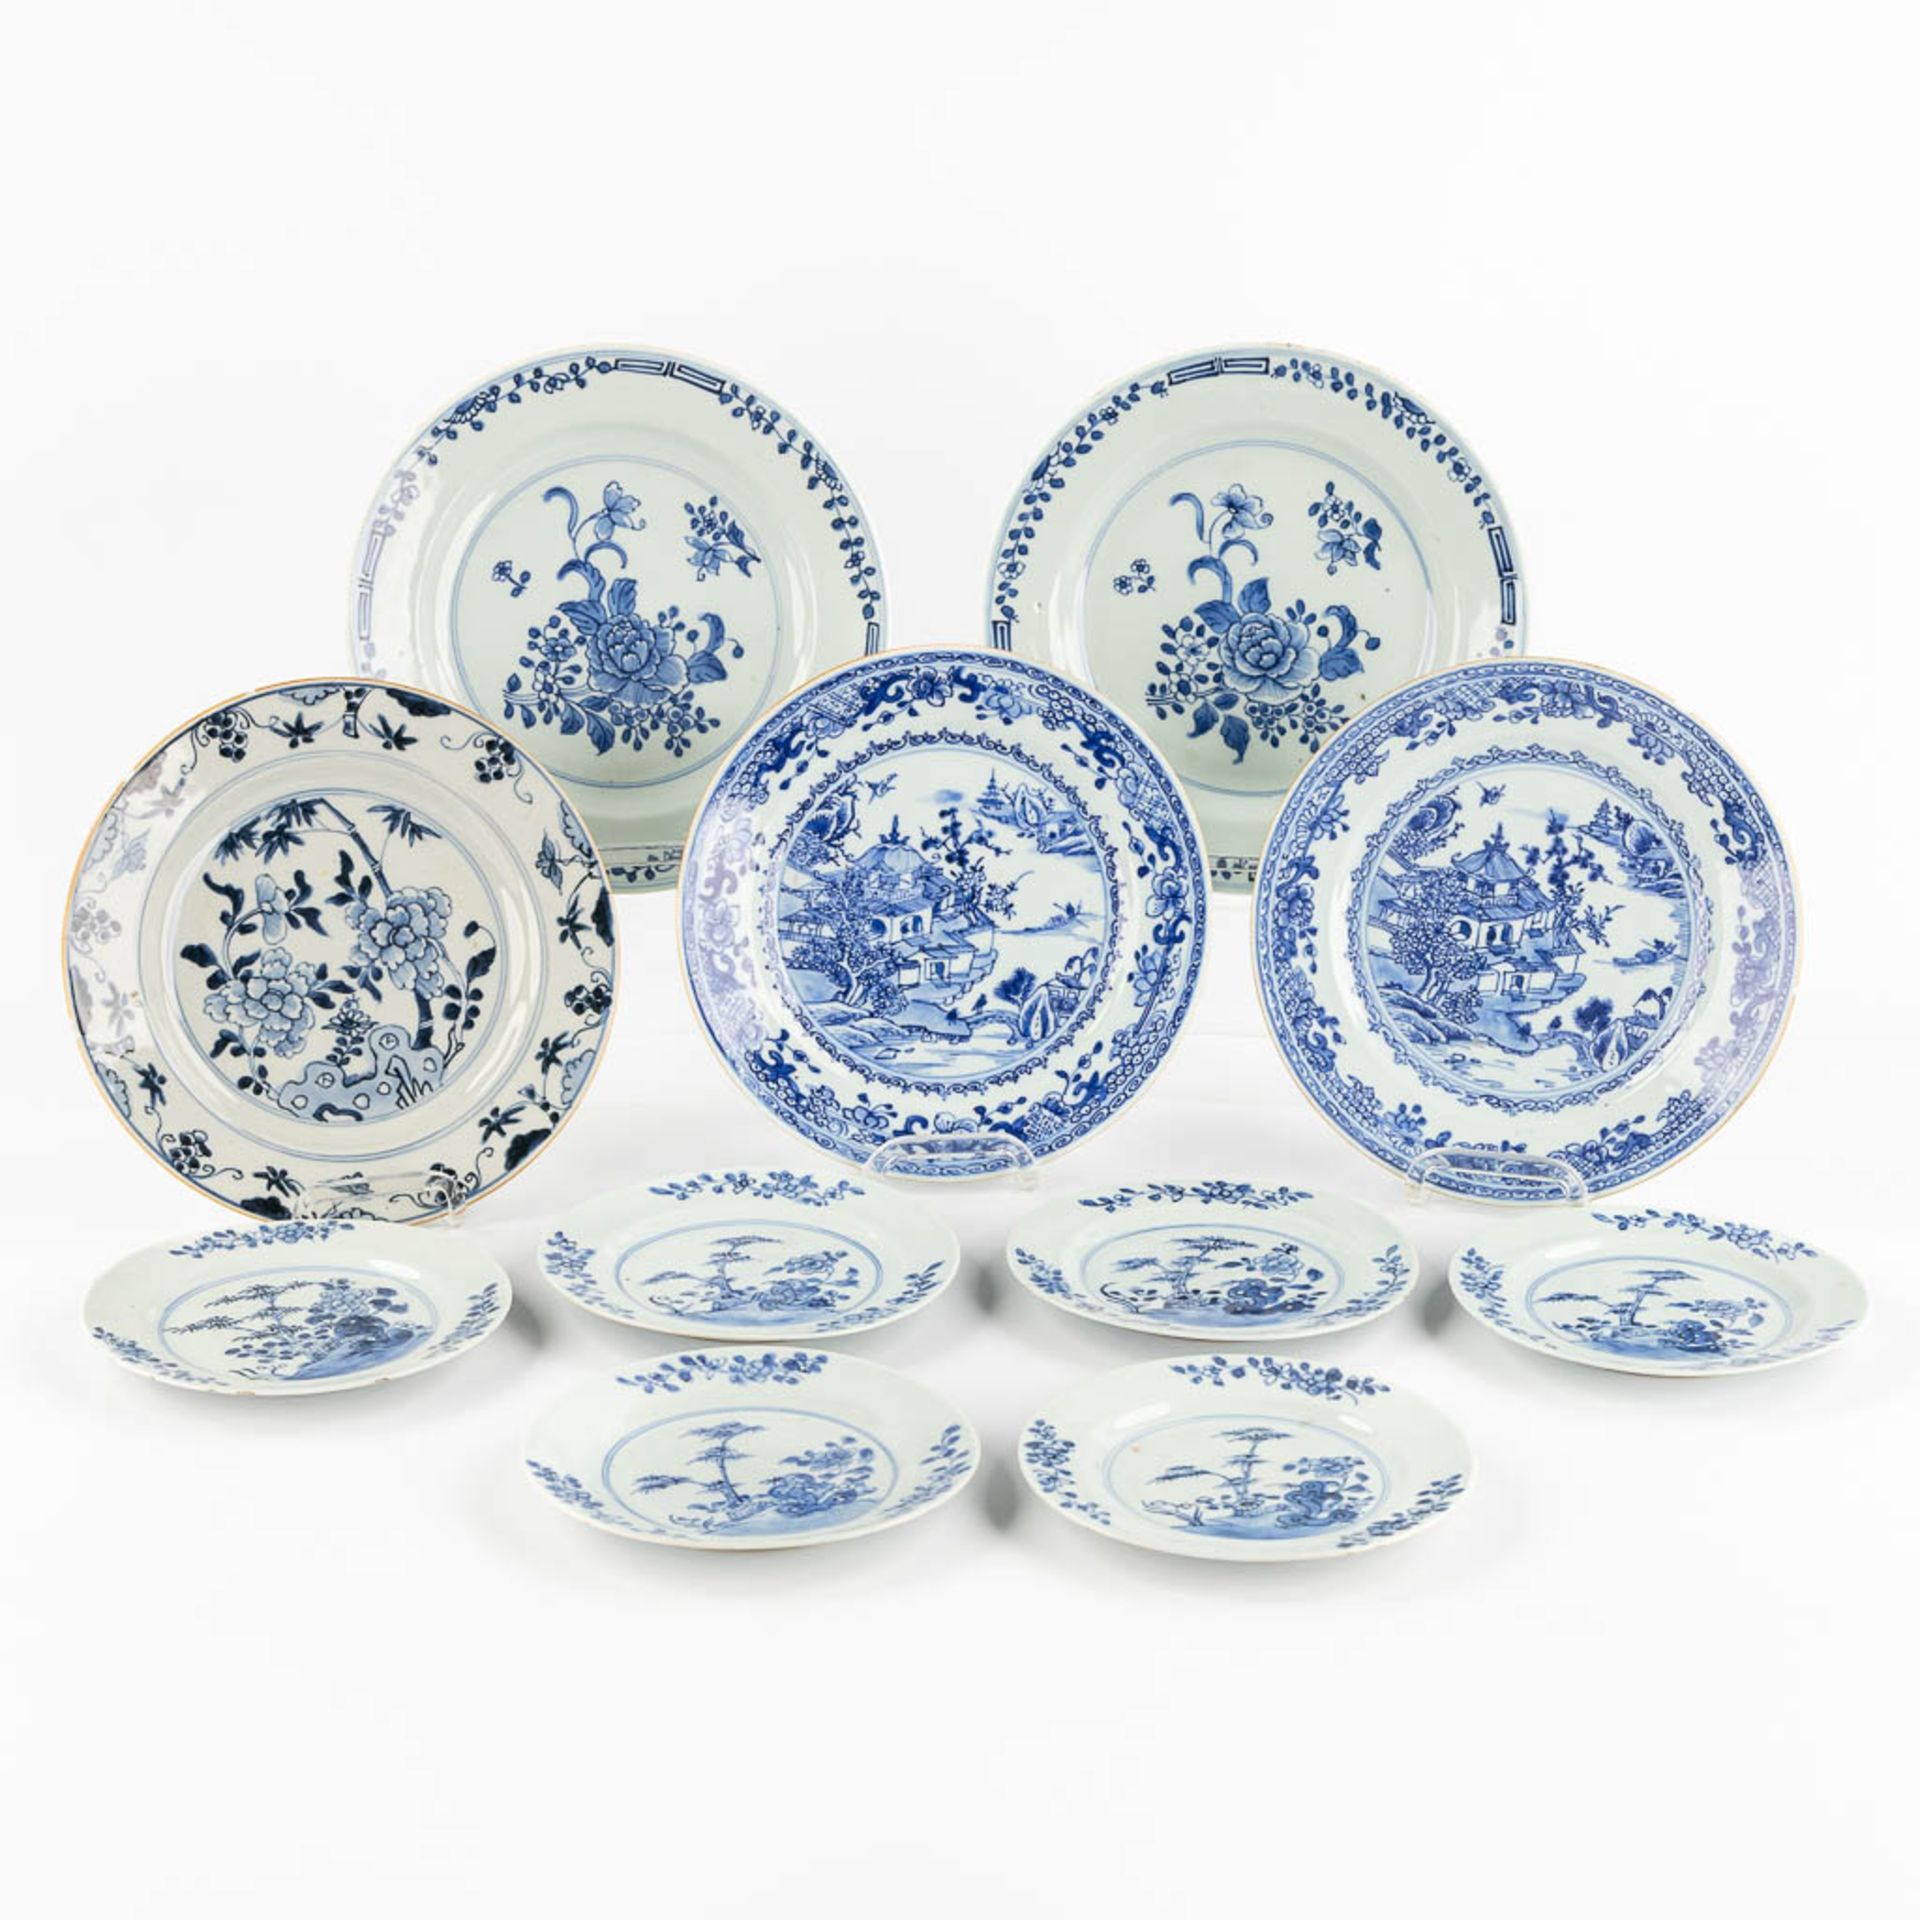 Eleven pieces of Chinese porcelain plates, blue-white decor. (D:24 cm)